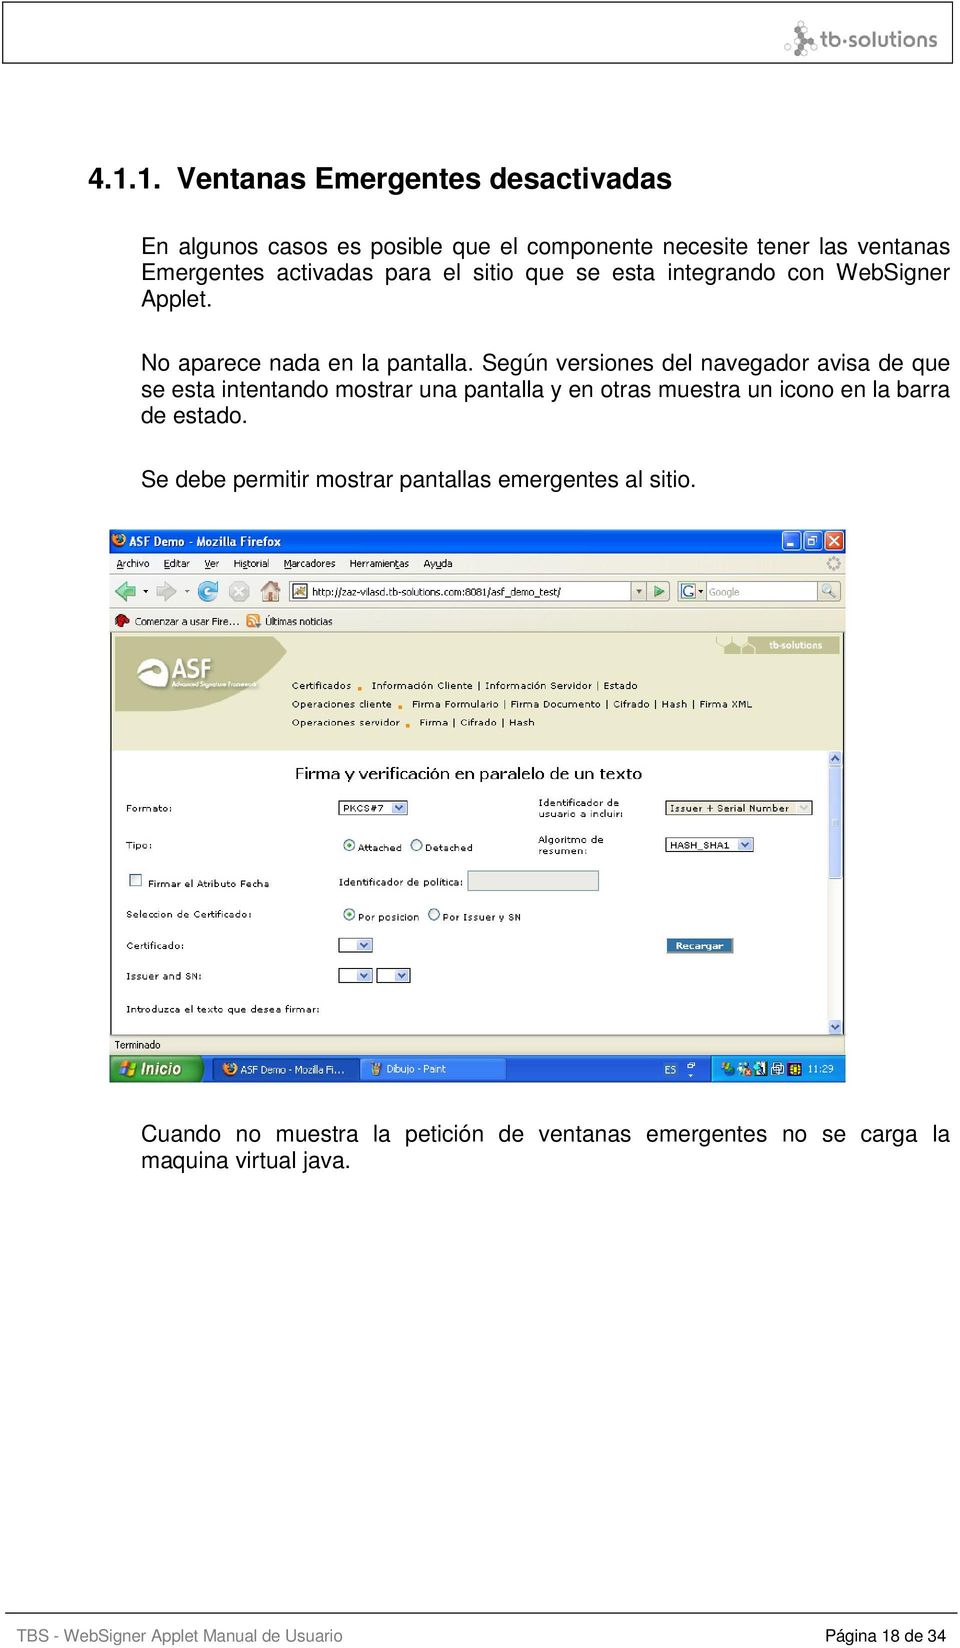 Según versiones del navegador avisa de que se esta intentando mostrar una pantalla y en otras muestra un icono en la barra de estado.